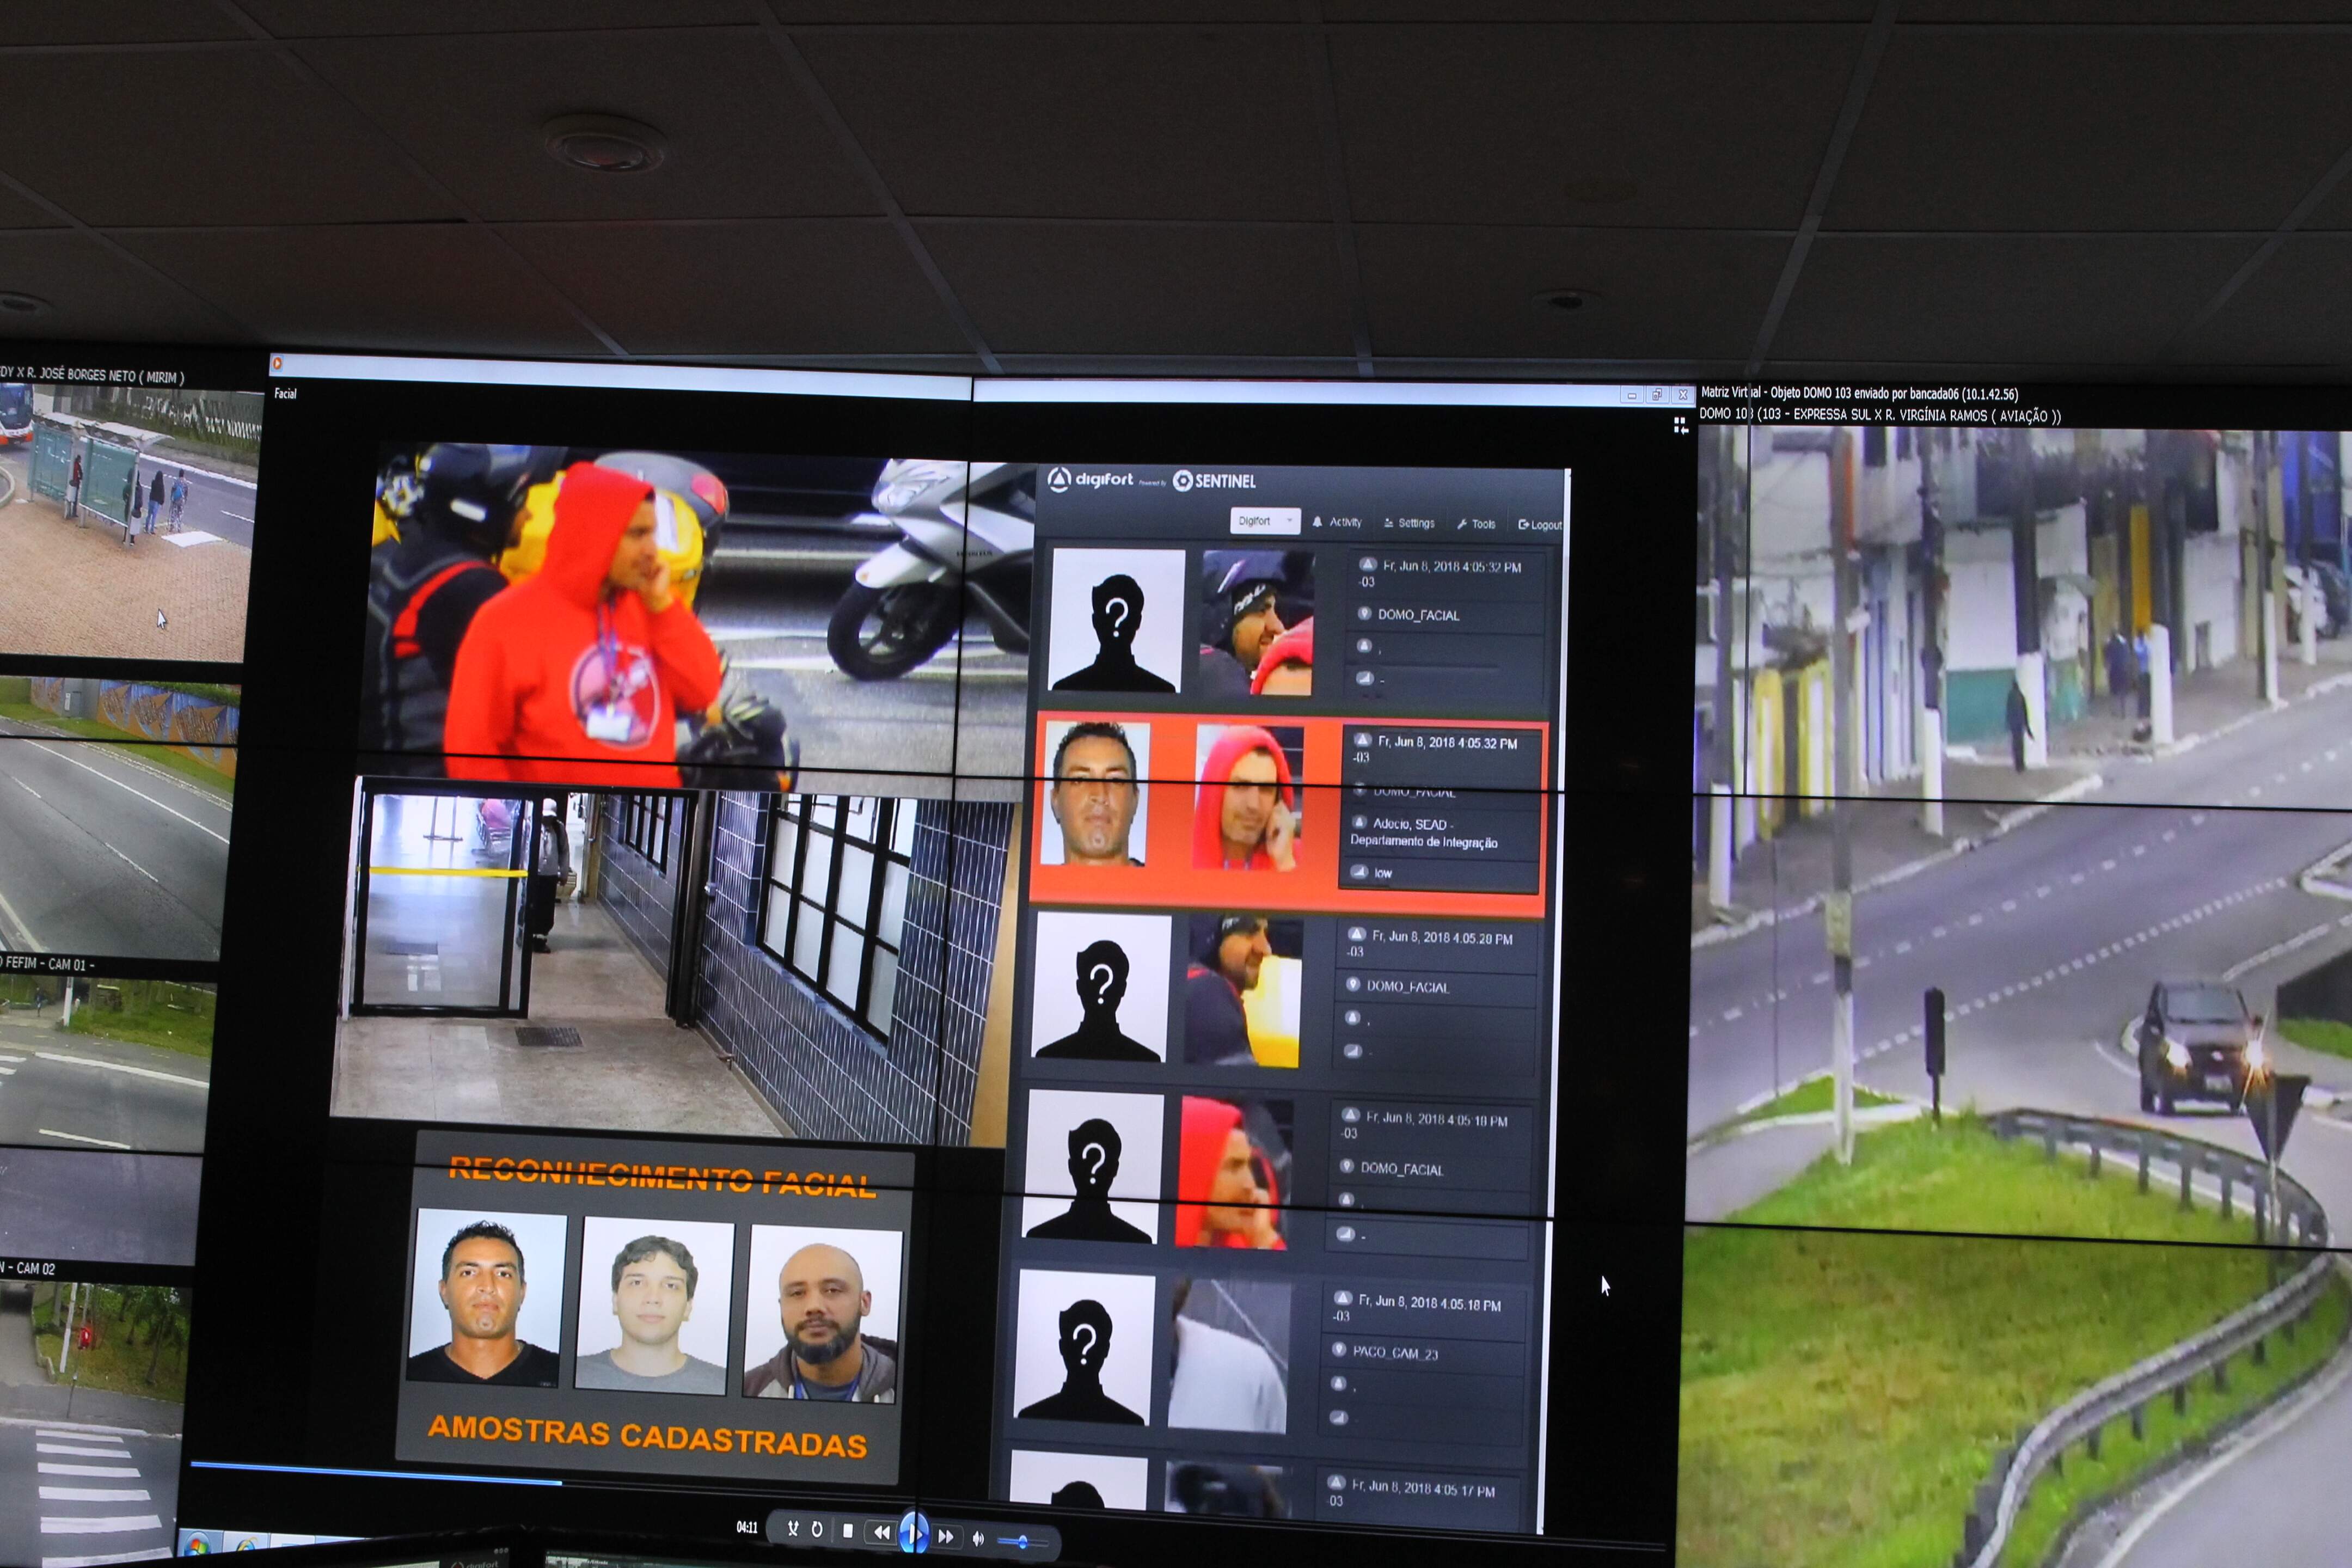 50 softwares de reconhecimento facial foram instalados nas câmeras de monitoramento de Praia Grande 